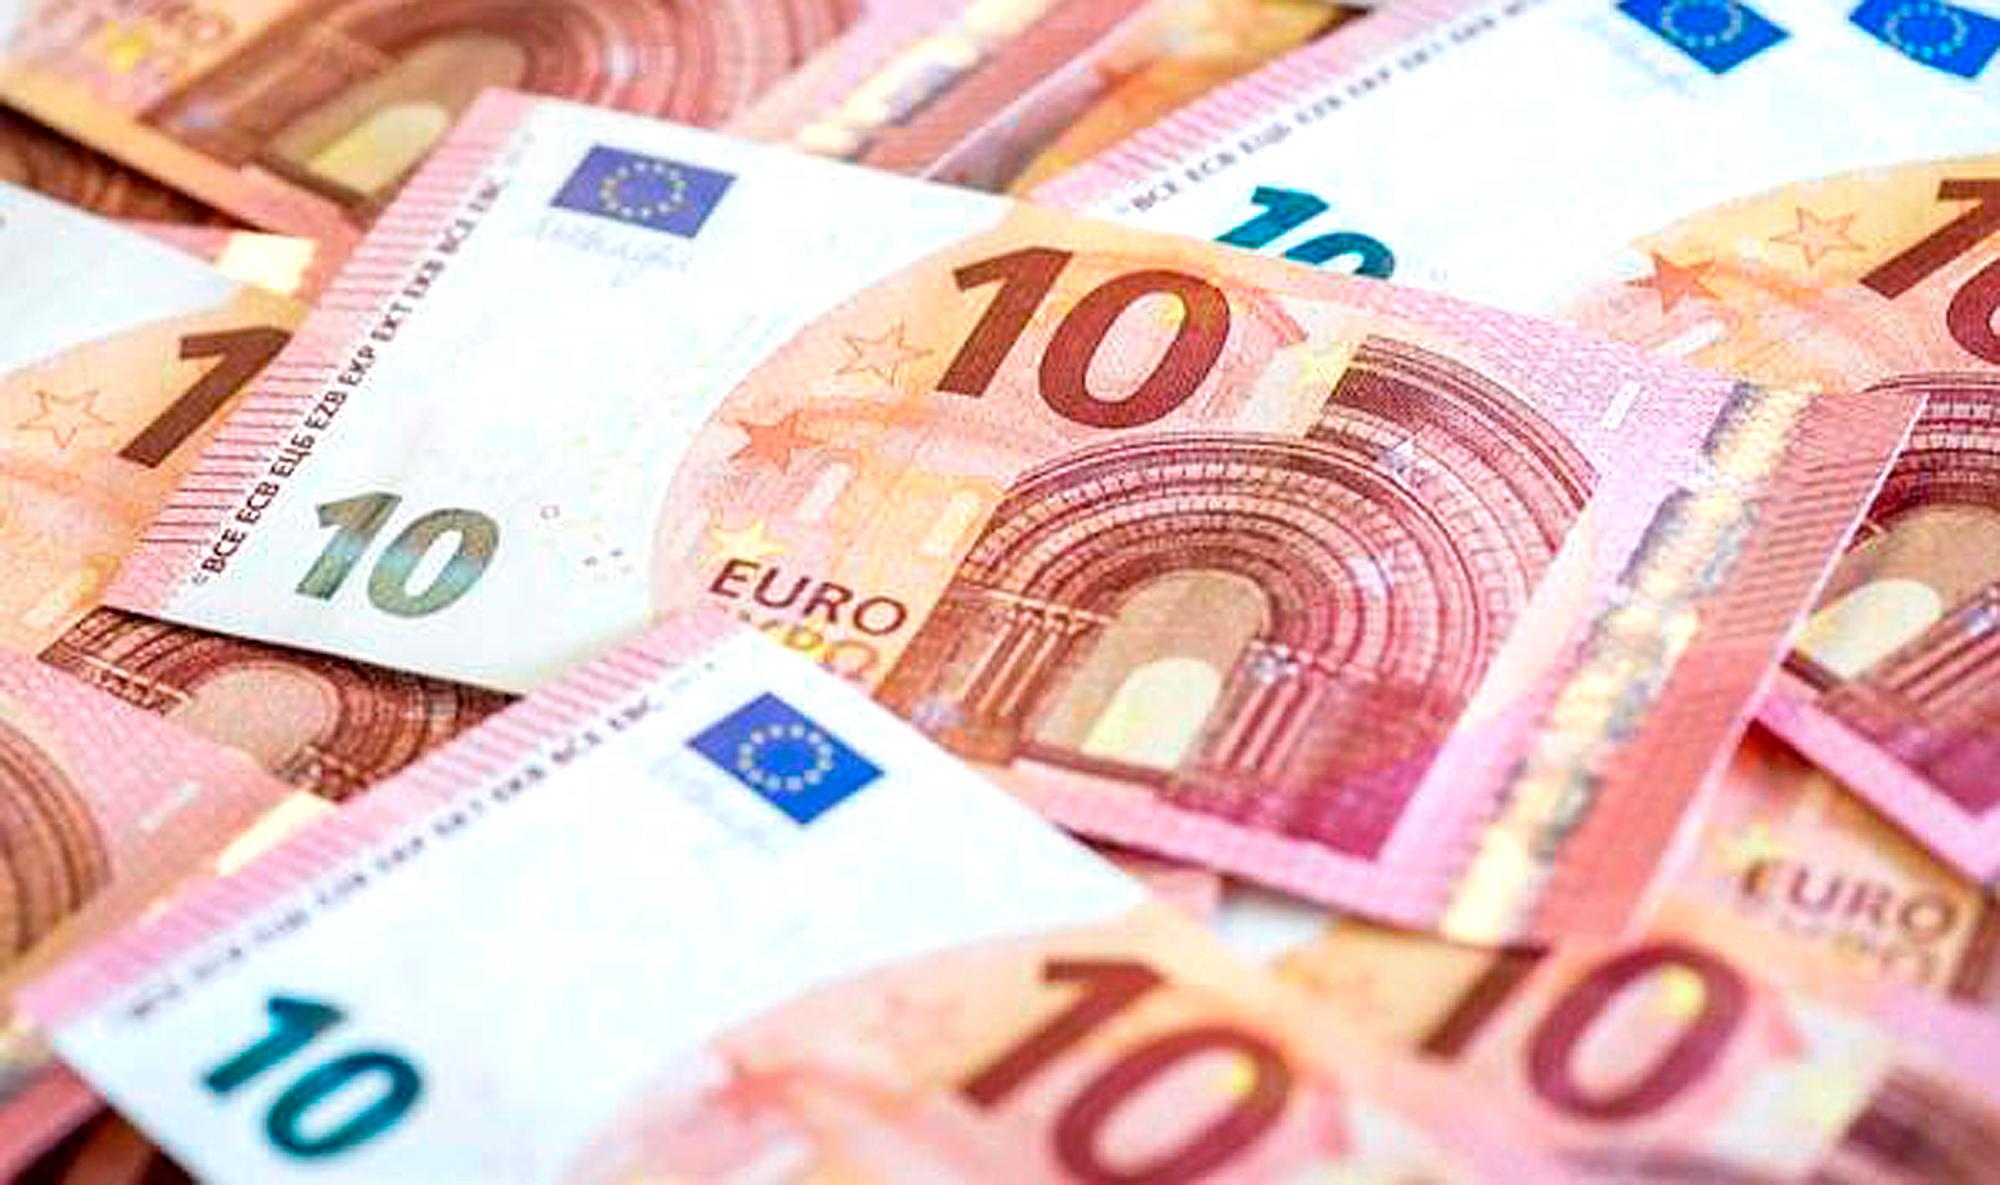 Moneda 10 euros: Esta es la nueva moneda de 10 euros que ya está en  circulación en España